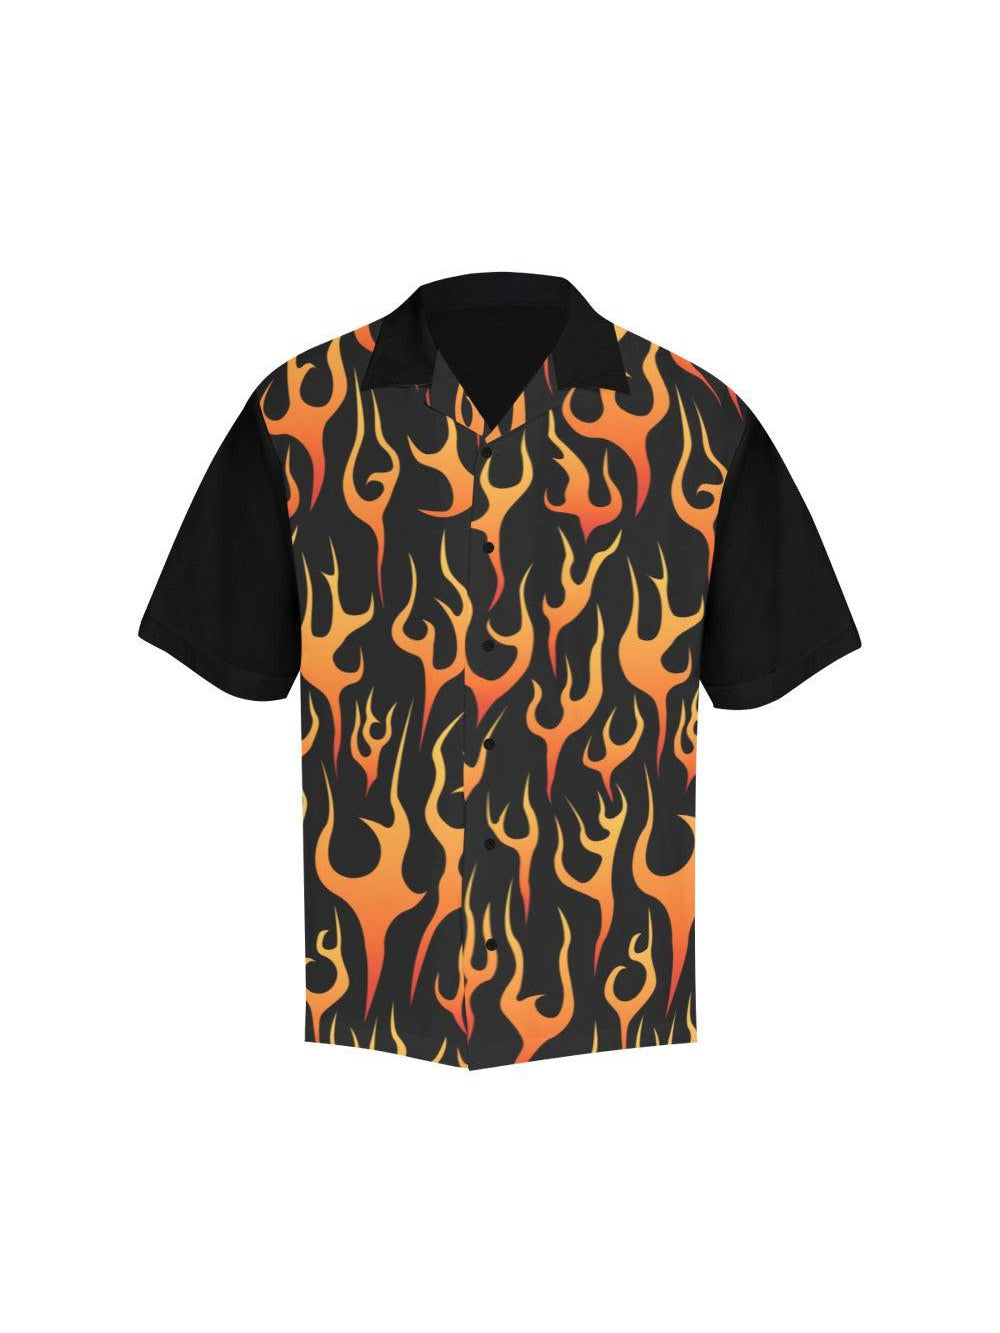 Flames Button Up Shirt